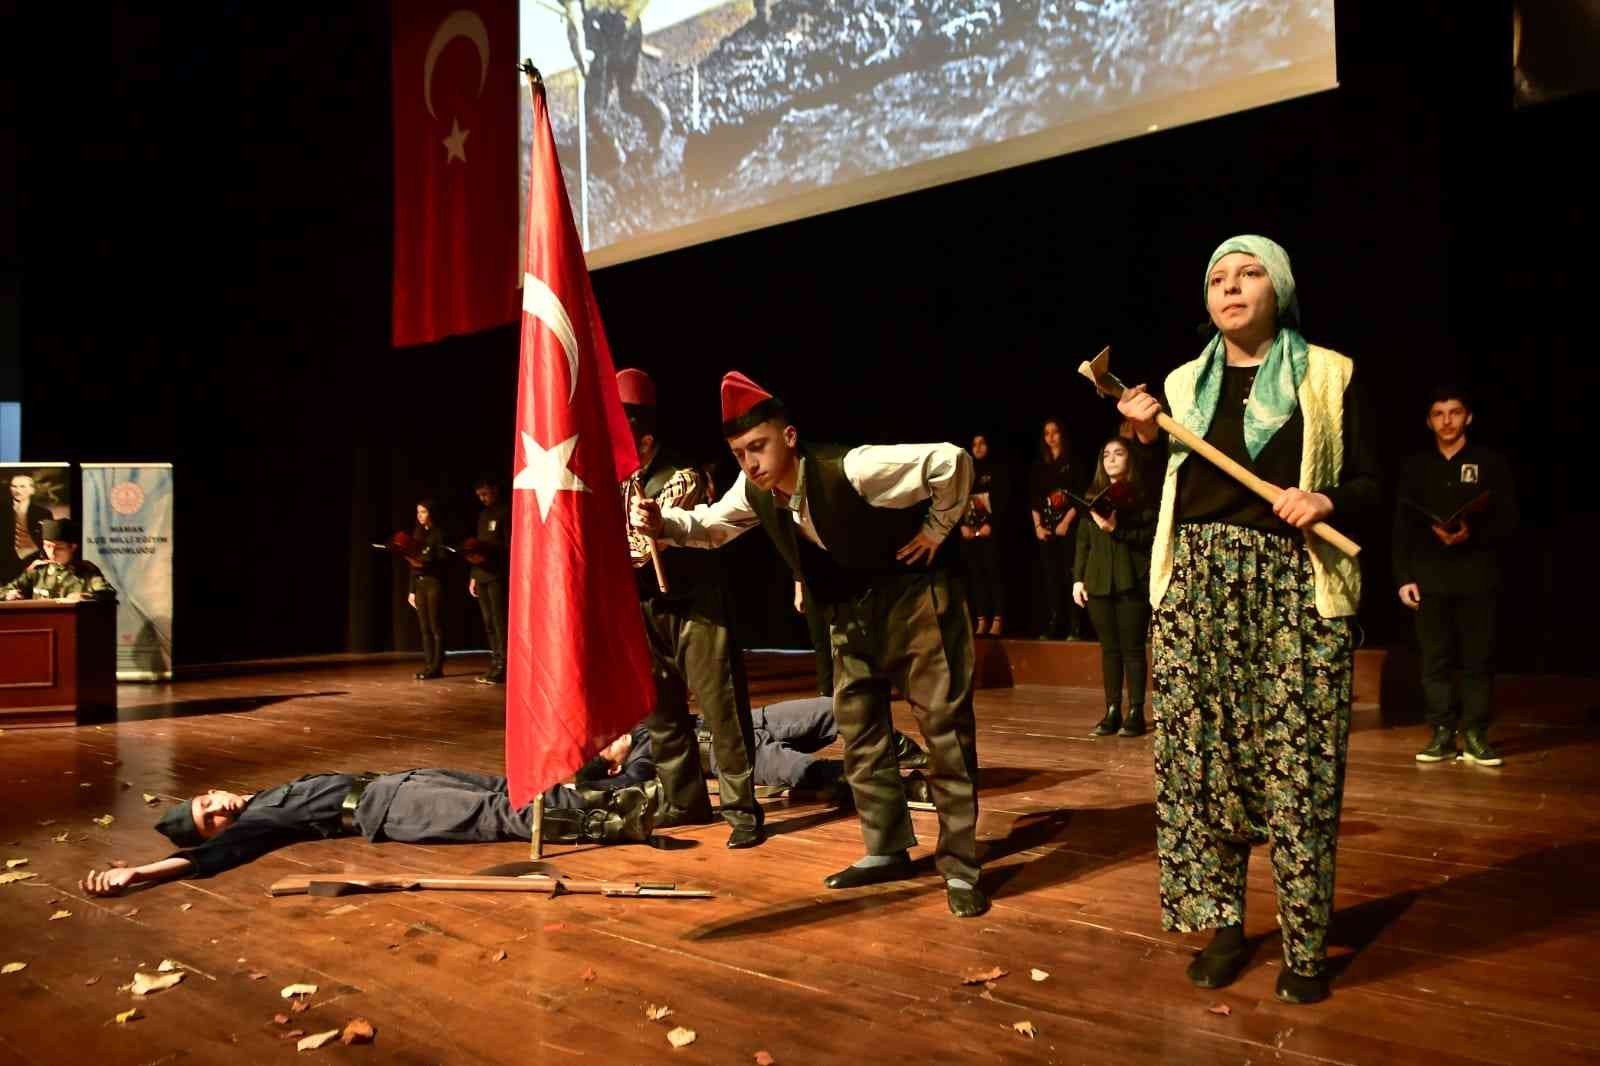 Atatürk ebediyete intikalinin 83. yılında Mamak’ta anıldı #ankara